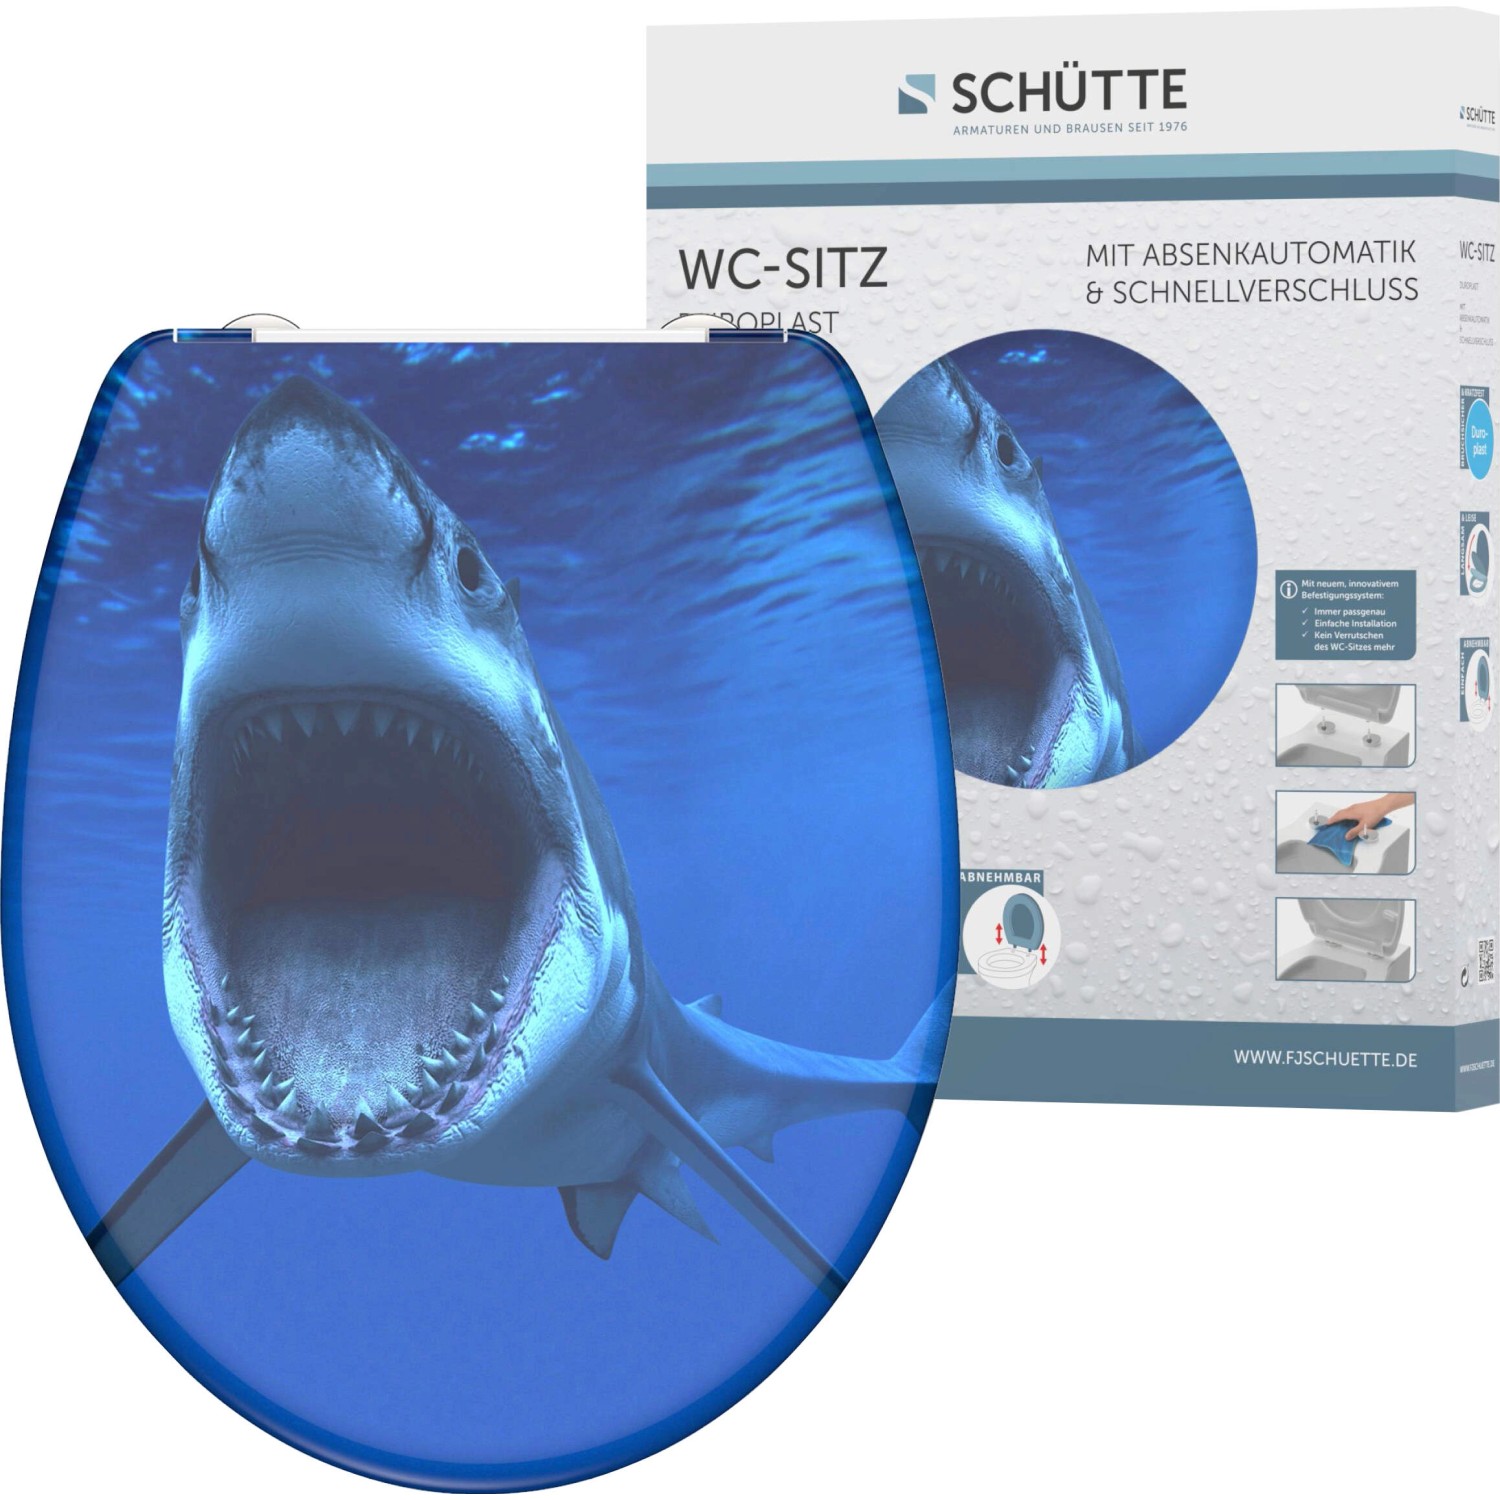 Schütte WC-Sitz Shark Duroplast mit Absenkautomatik & Schnellverschluss